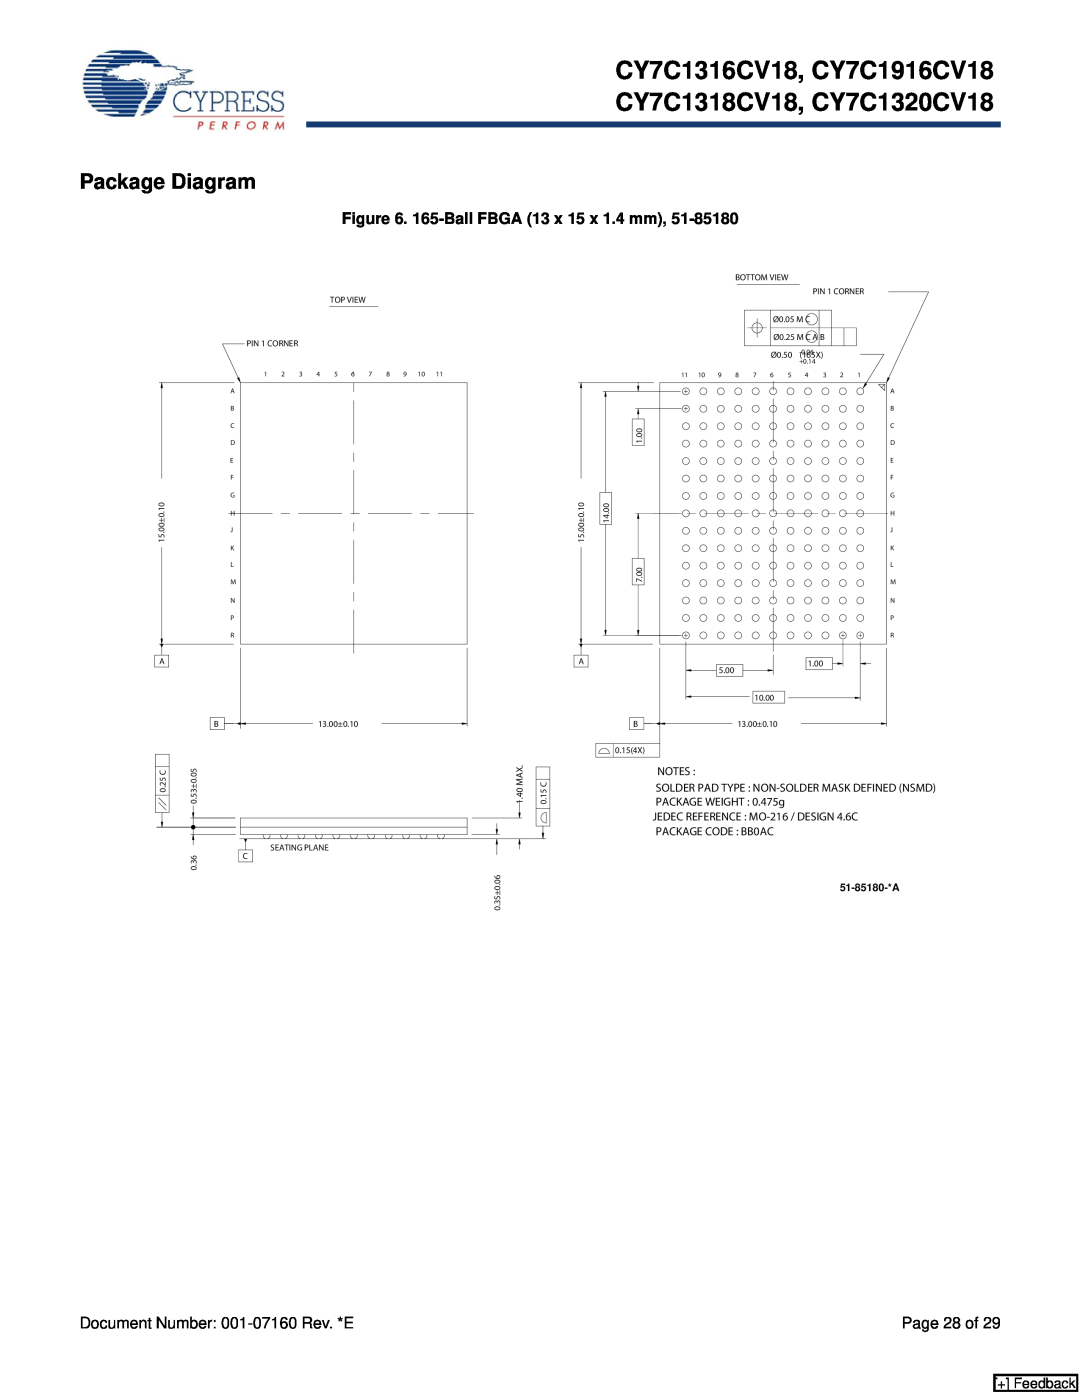 Cypress manual Package Diagram, CY7C1316CV18, CY7C1916CV18 CY7C1318CV18, CY7C1320CV18, 165-Ball FBGA 13 x 15 x 1.4 mm 